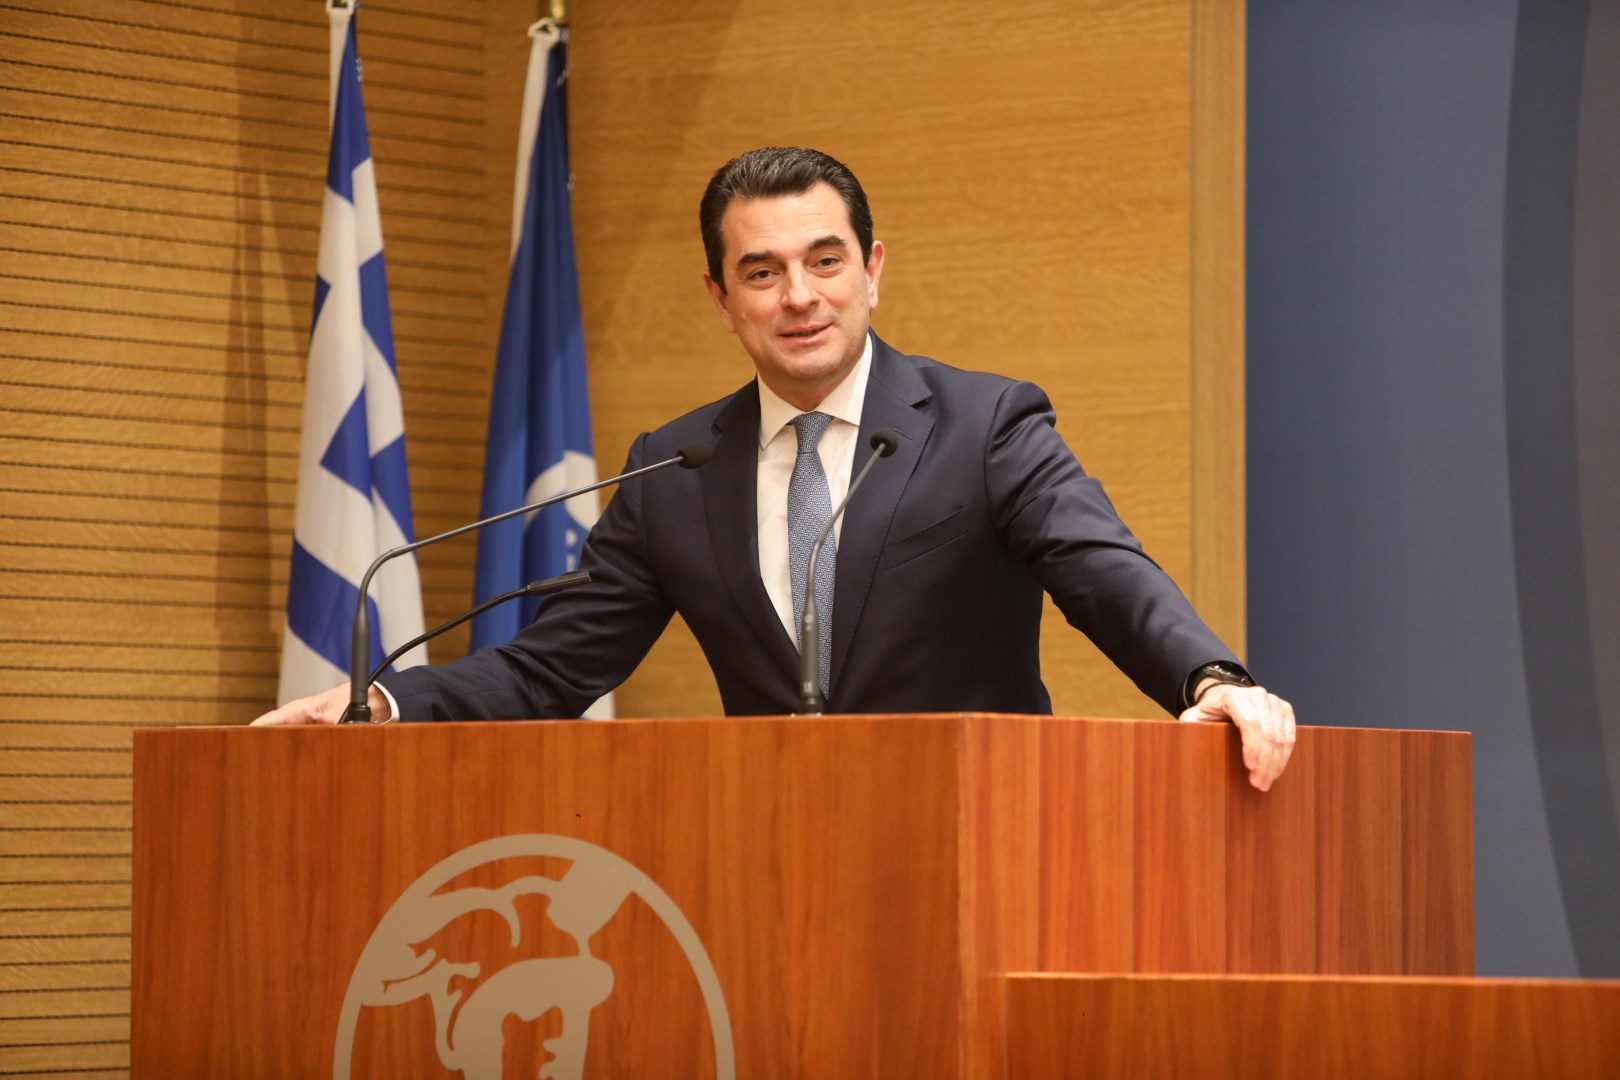 Σκρέκας: Συνεχίζουμε την πολιτική που οφελεί ολόκληρη την ελληνική κοινωνία